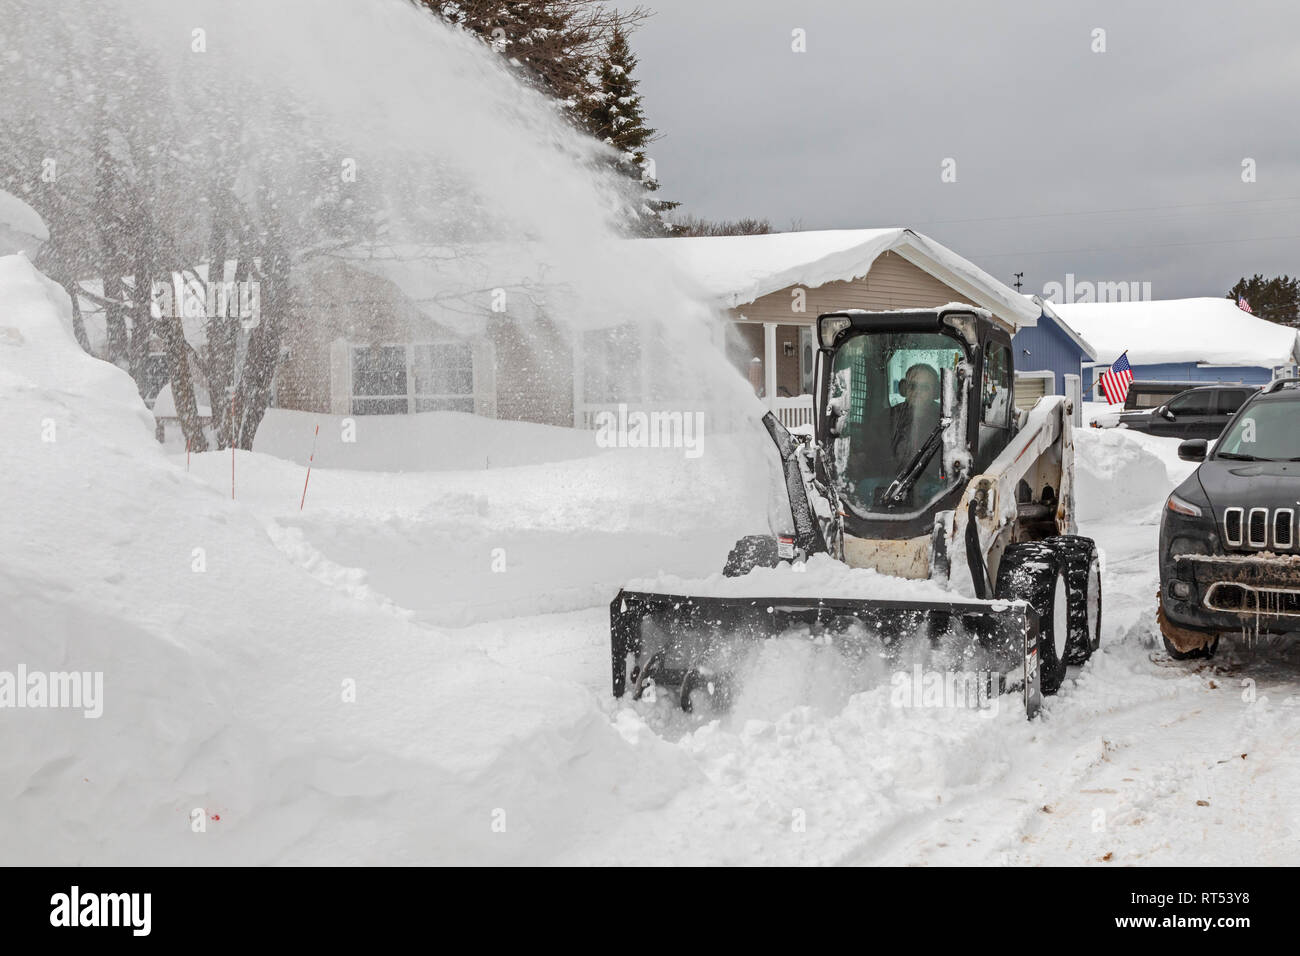 Grand Marais, Michigan - Eine industrielle Schneefräse löscht Schnee von einer Straße in einer Stadt am Lake Superior in der oberen Halbinsel von Michigan. Die Stadt averag Stockfoto